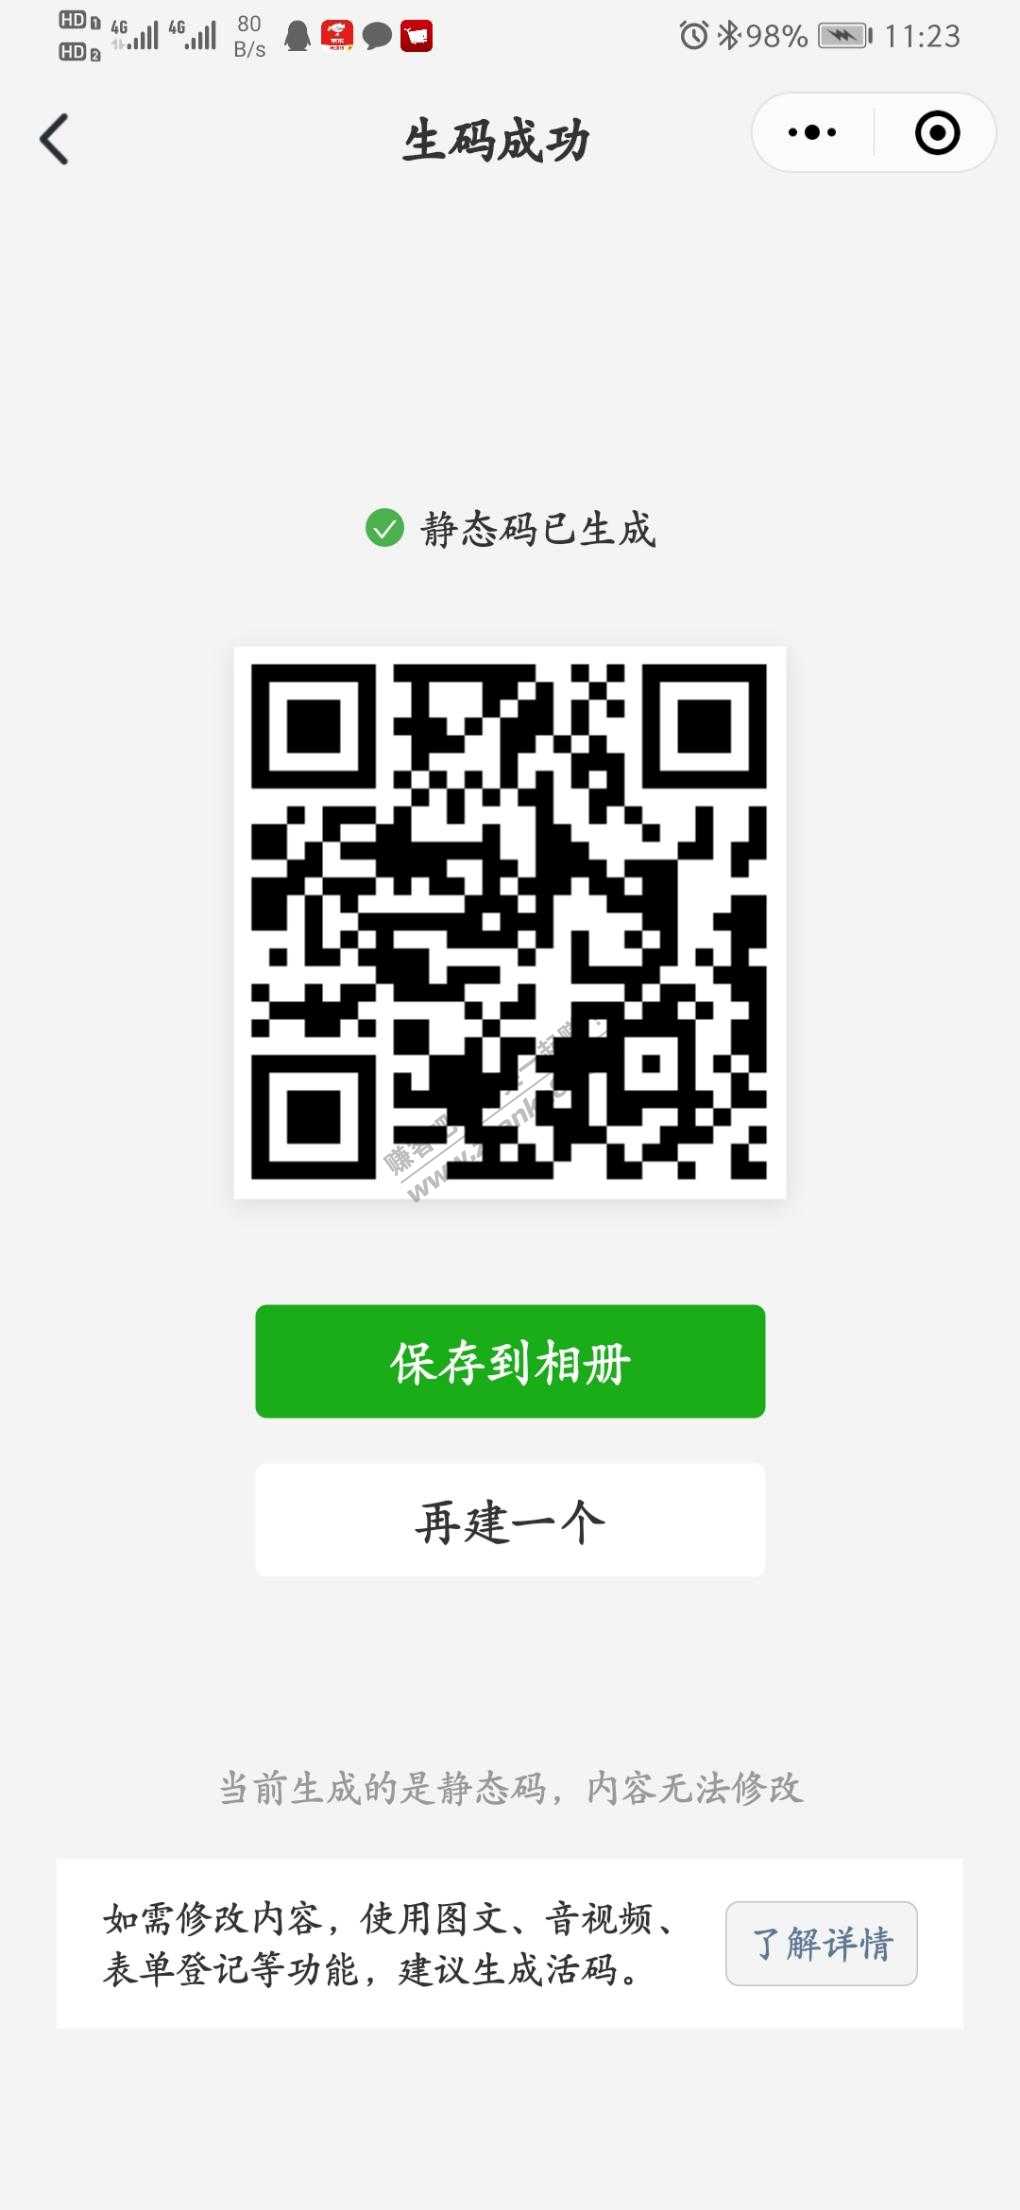 招行扫码-5元商城-惠小助(52huixz.com)